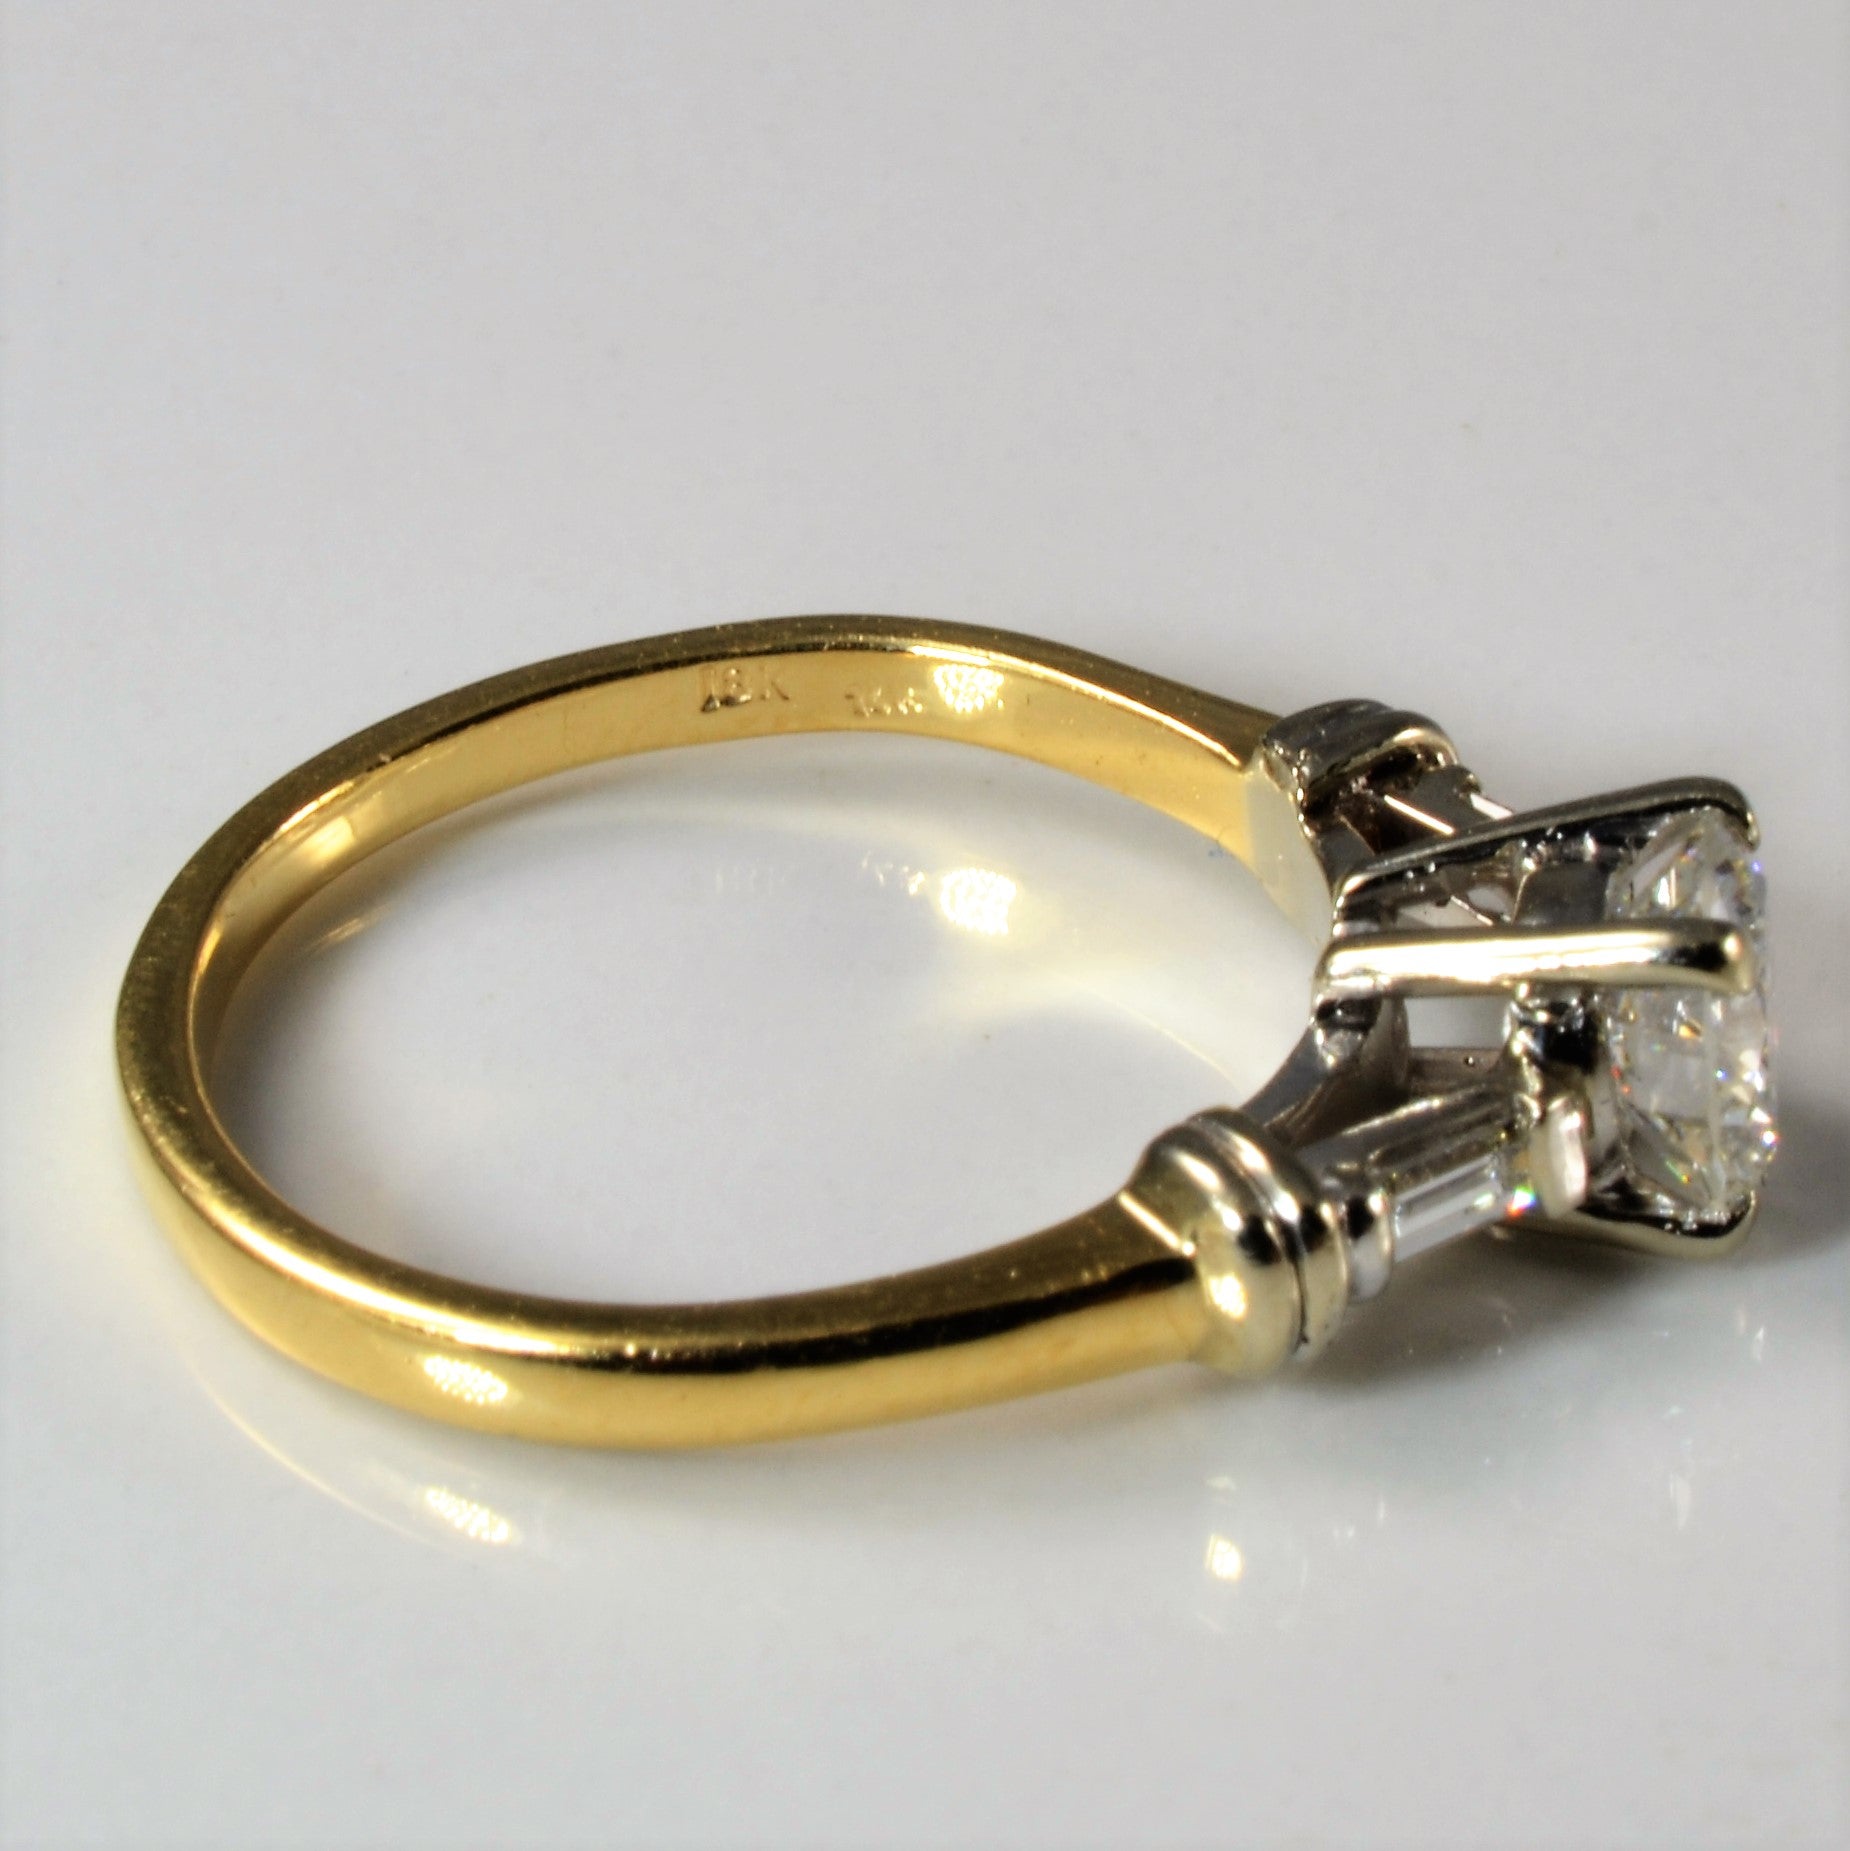 Baguette Shoulder Three Stone Engagement Ring | 1.01ctw | SZ 8 |